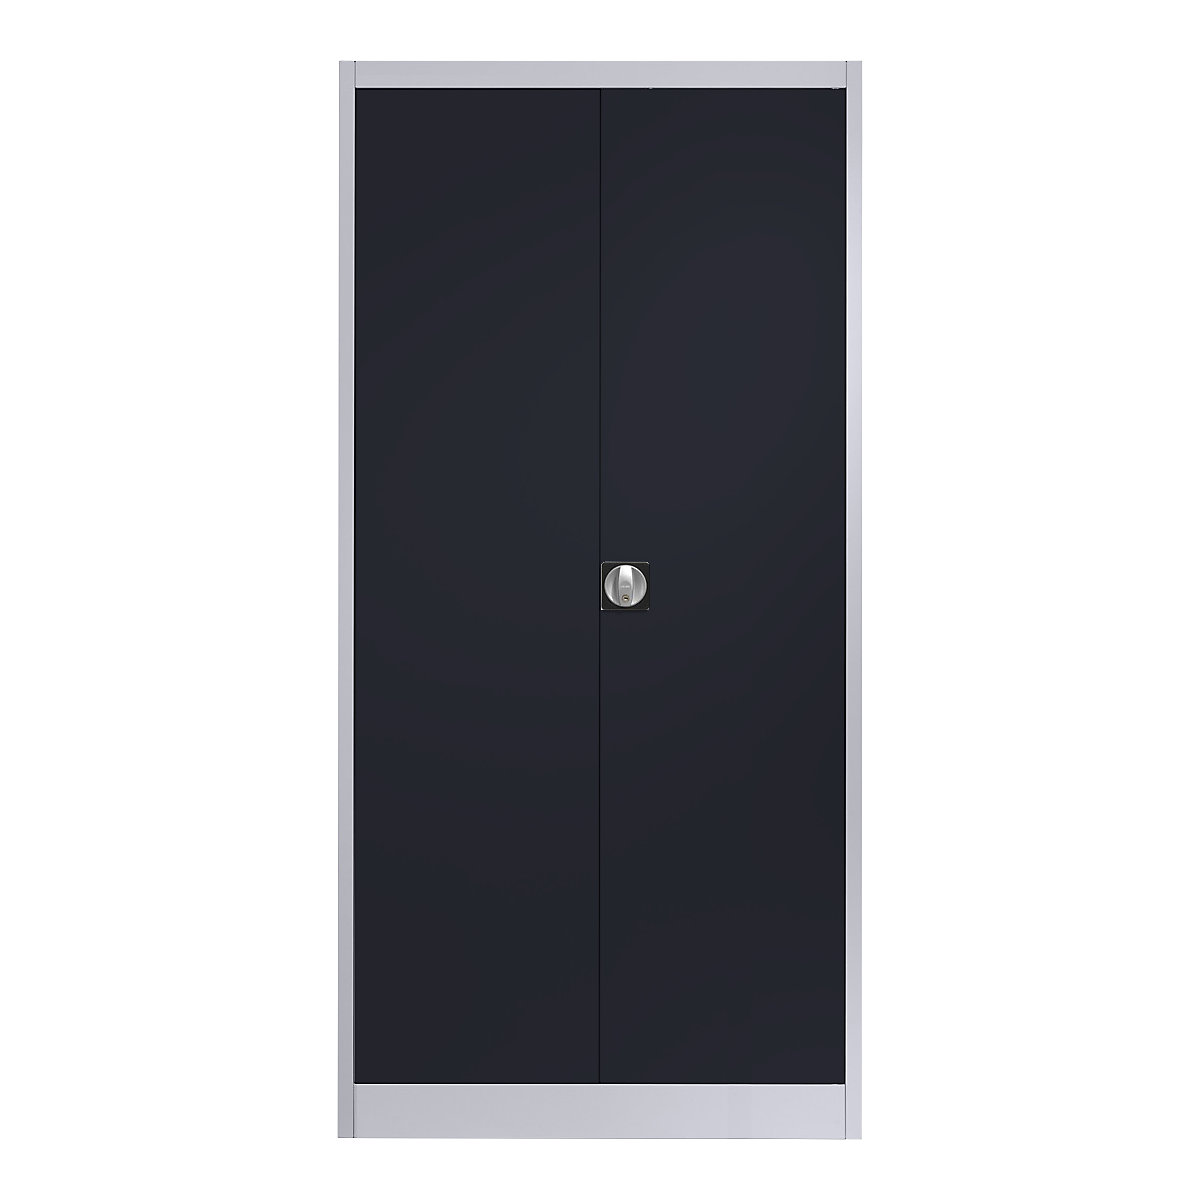 Čelični ormar s krilnim vratima – mauser, 4 police, D 420 mm, u aluminij bijeloj / antracit sivoj boji-4